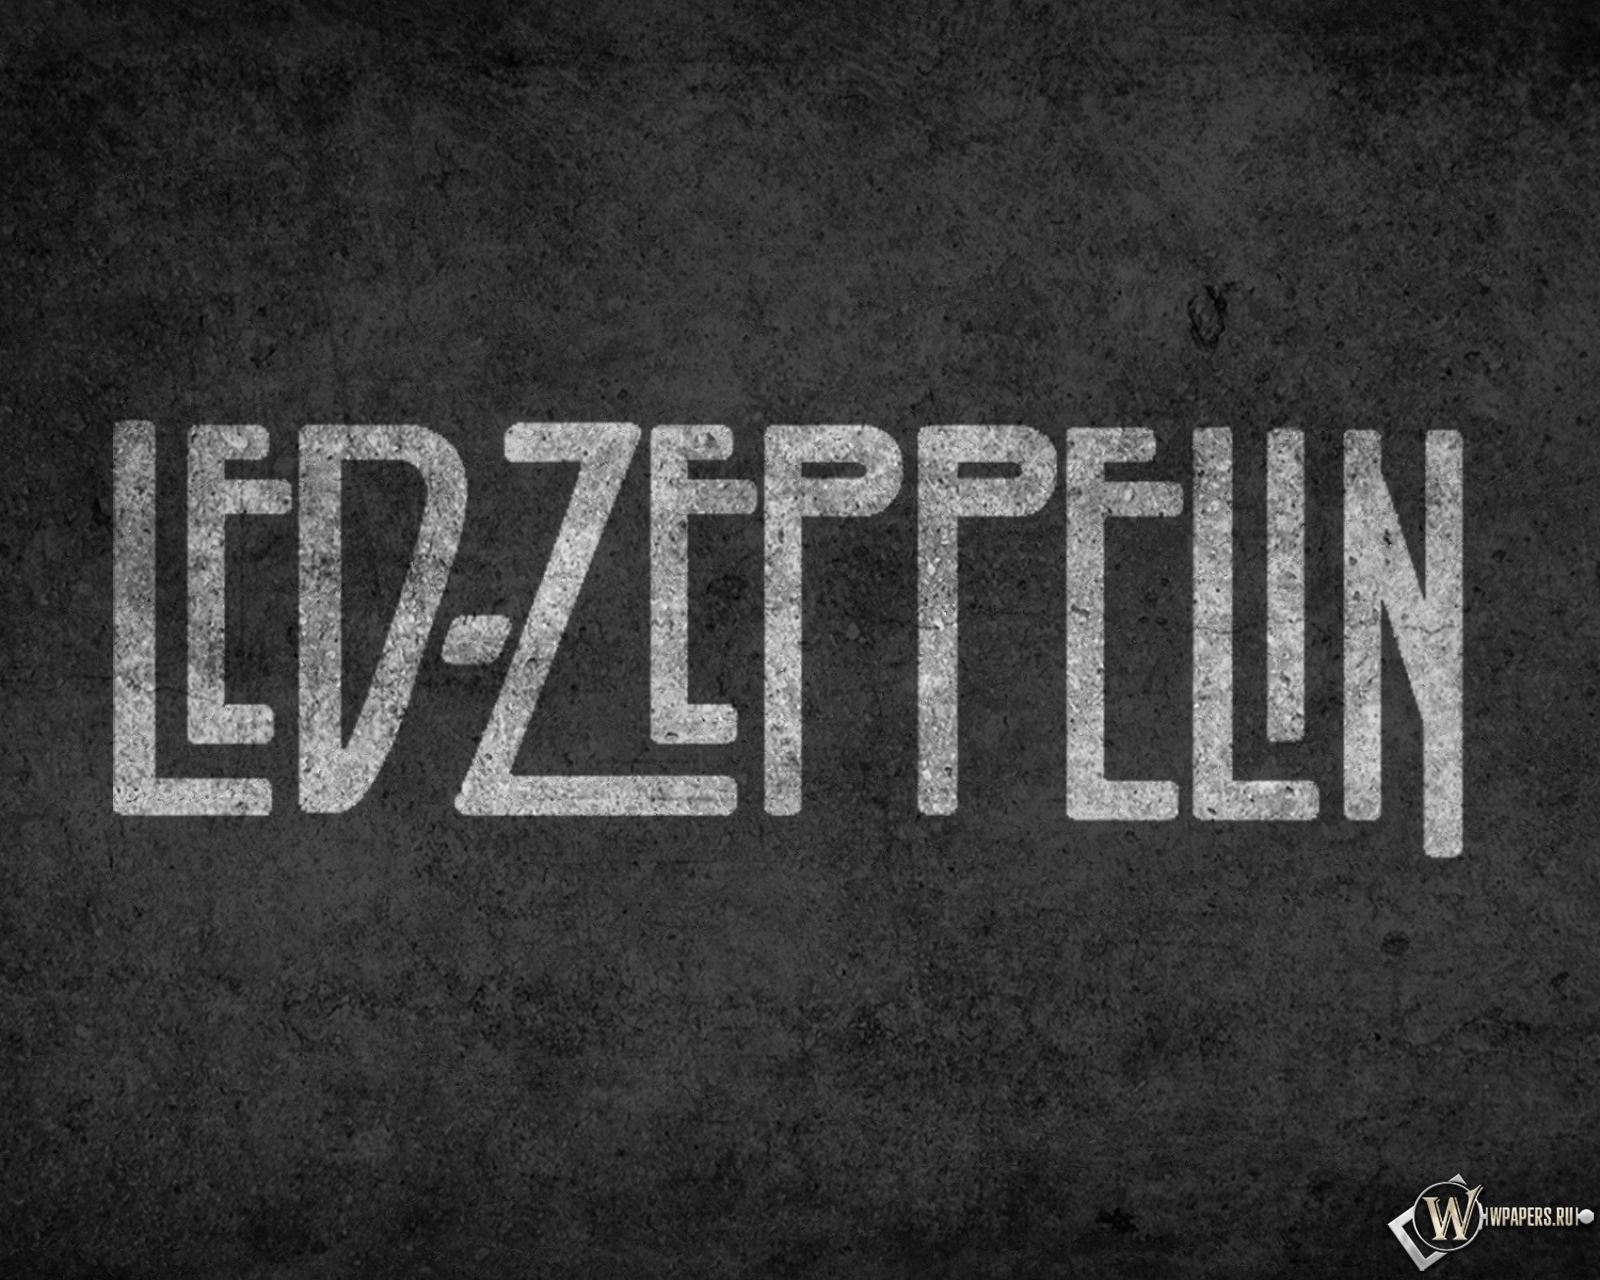 Led Zeppelin 1600x1280